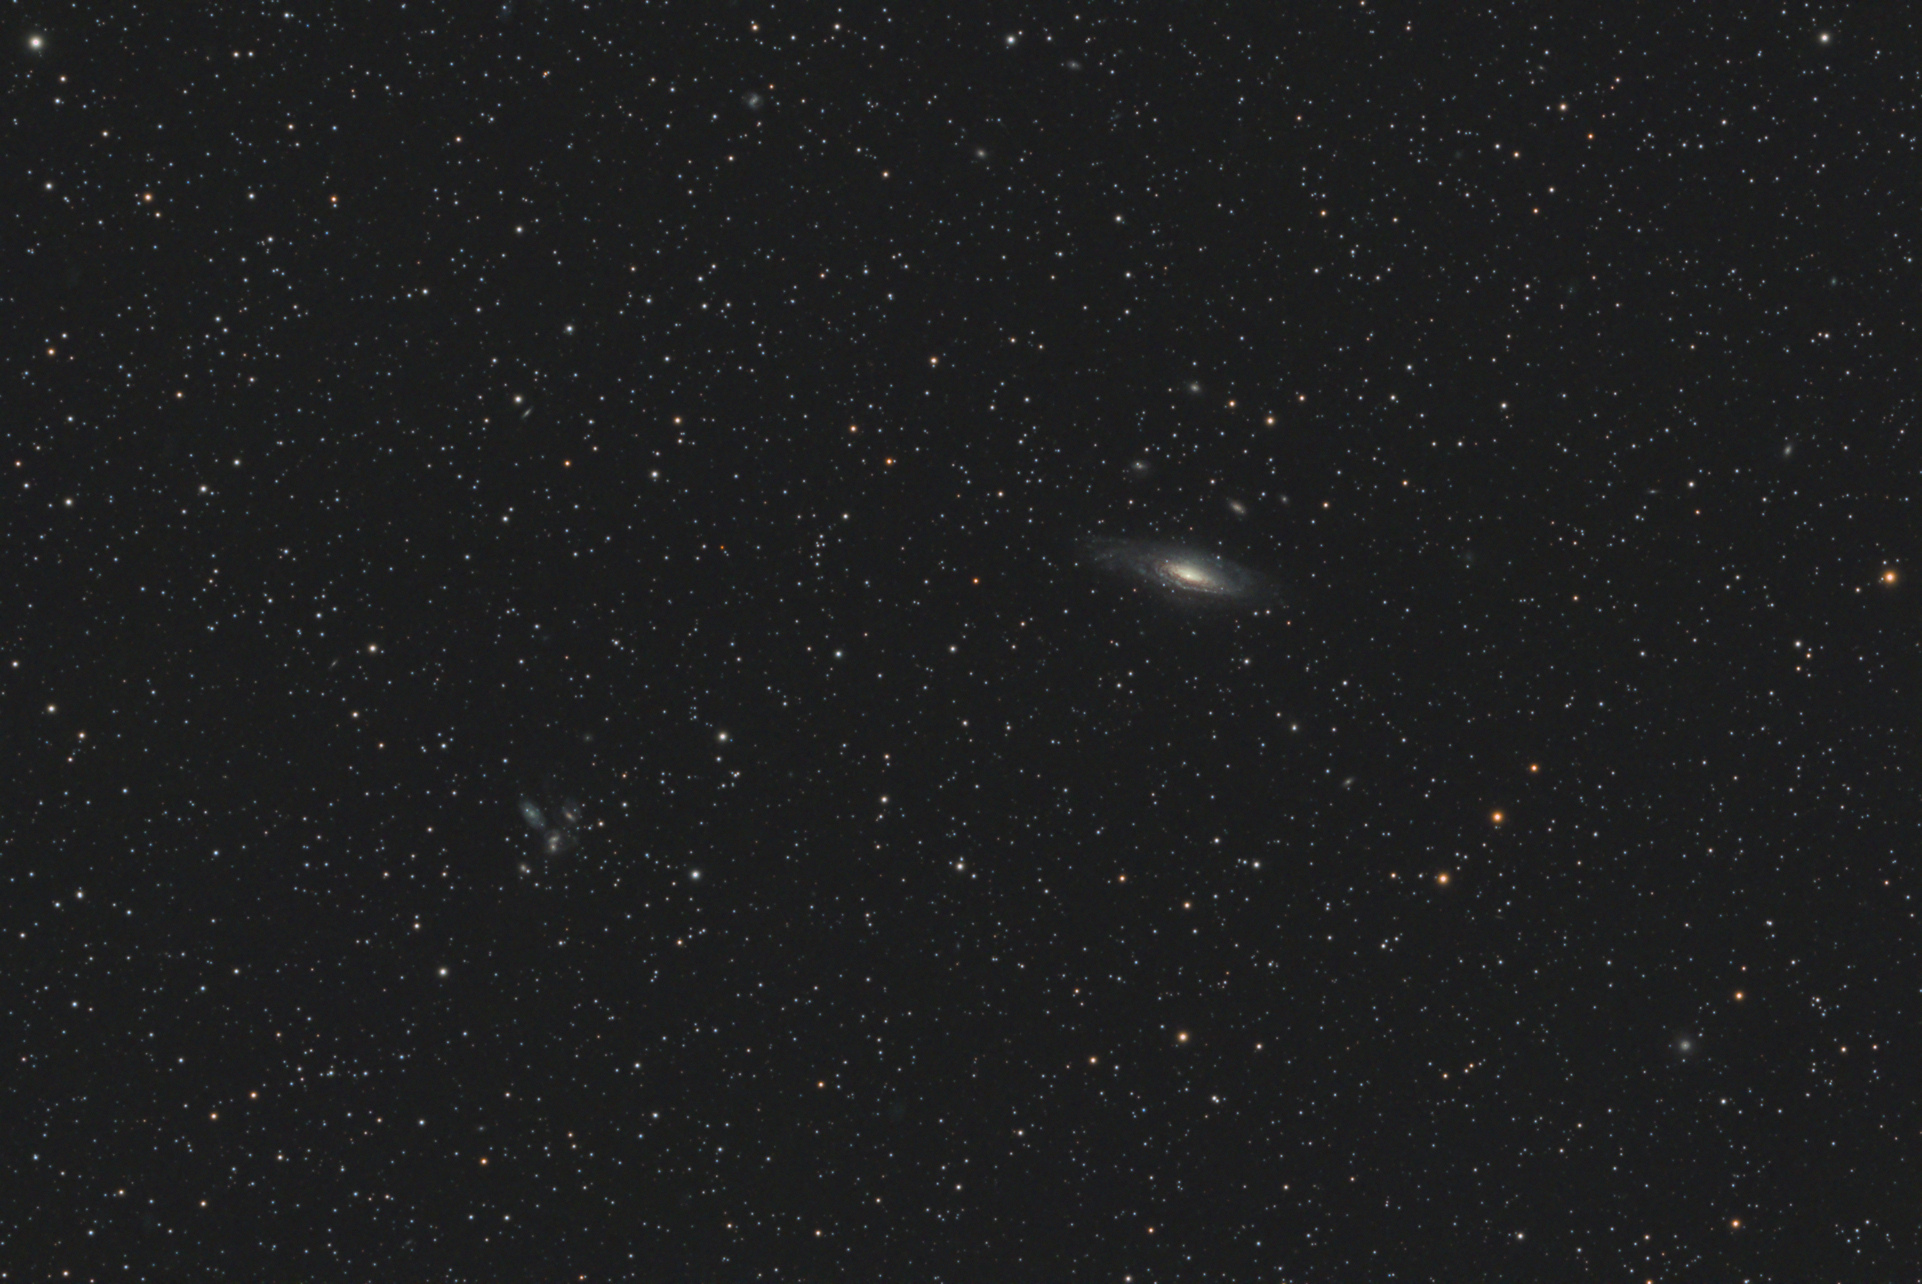 5ded40145cb96_NGC7331_BMP_1922x1275.jpg.4e1de1eb6c543624d1721b75967999ac.jpg